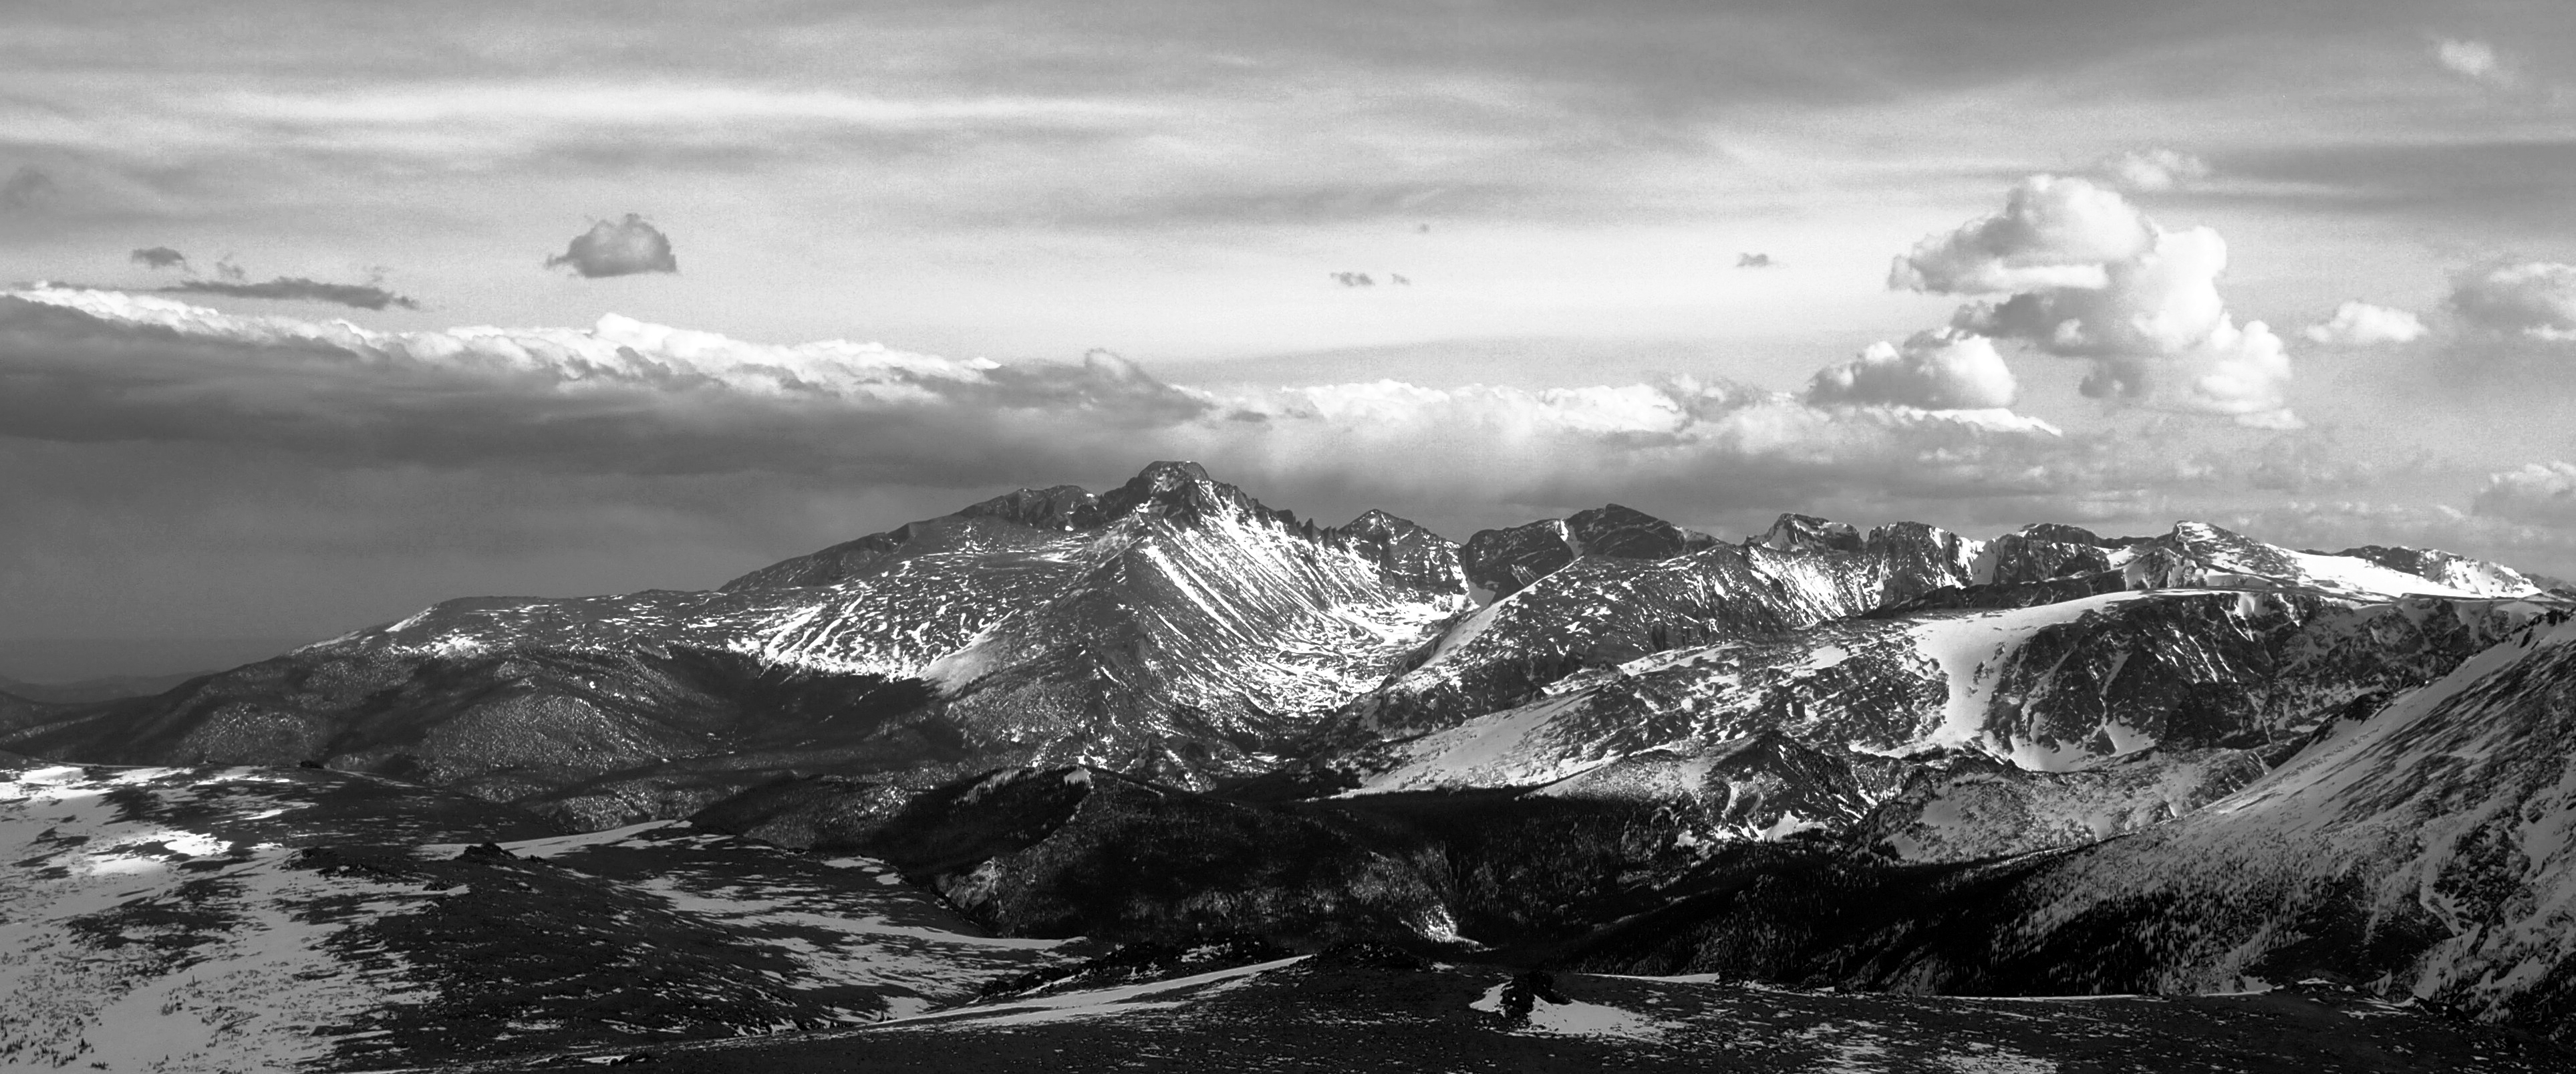 Rocky Mountain National Park, Longs Peak